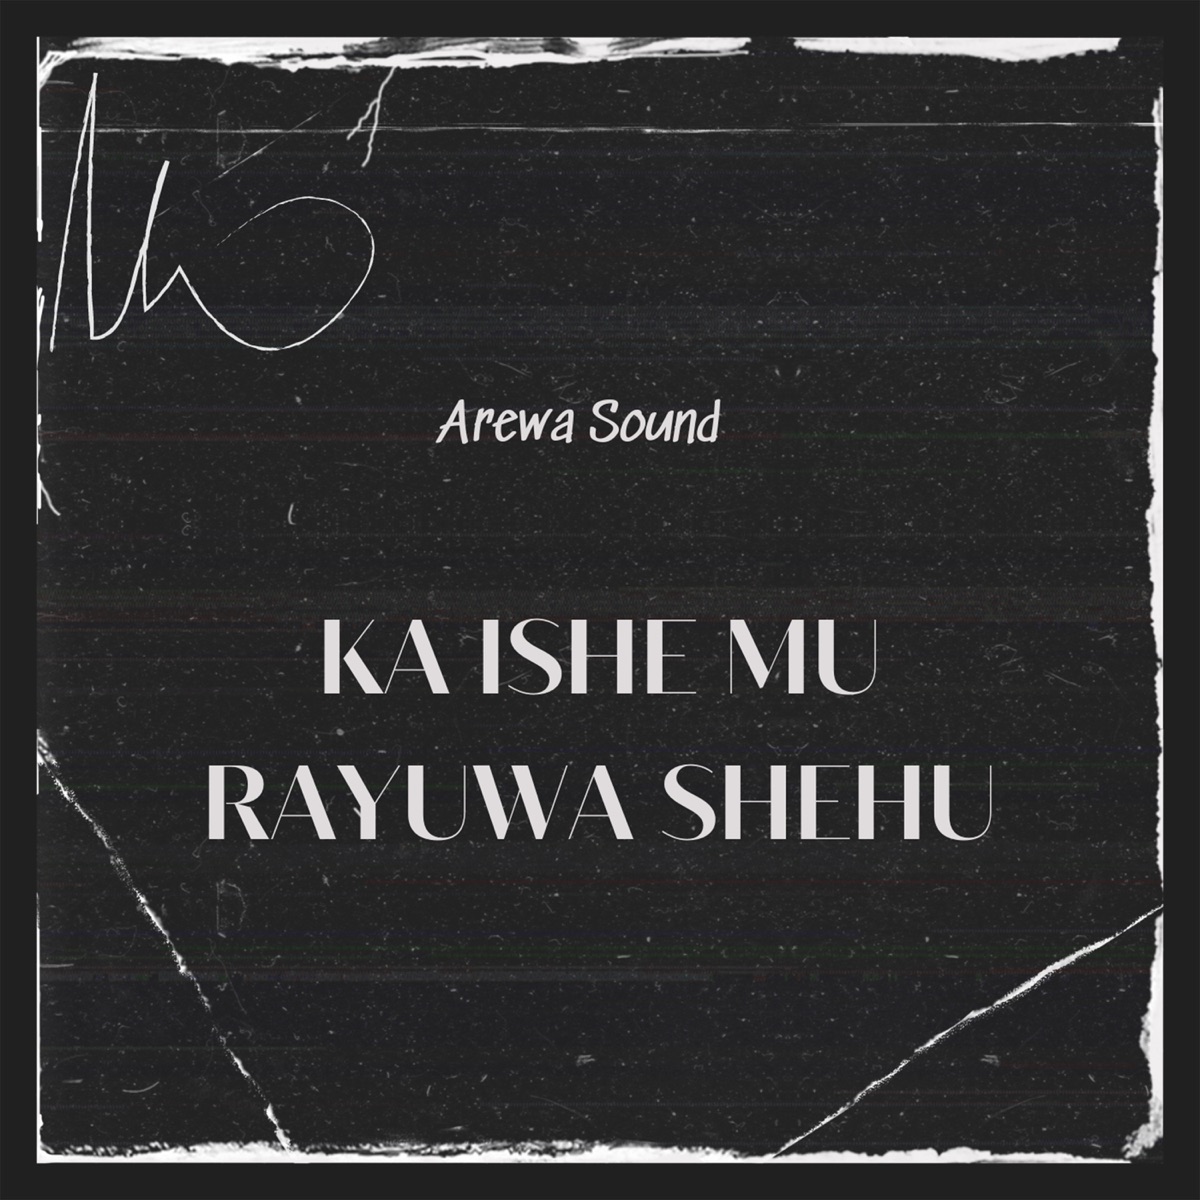 Masu Munafurci - Single by Arewa Sound on Apple Music